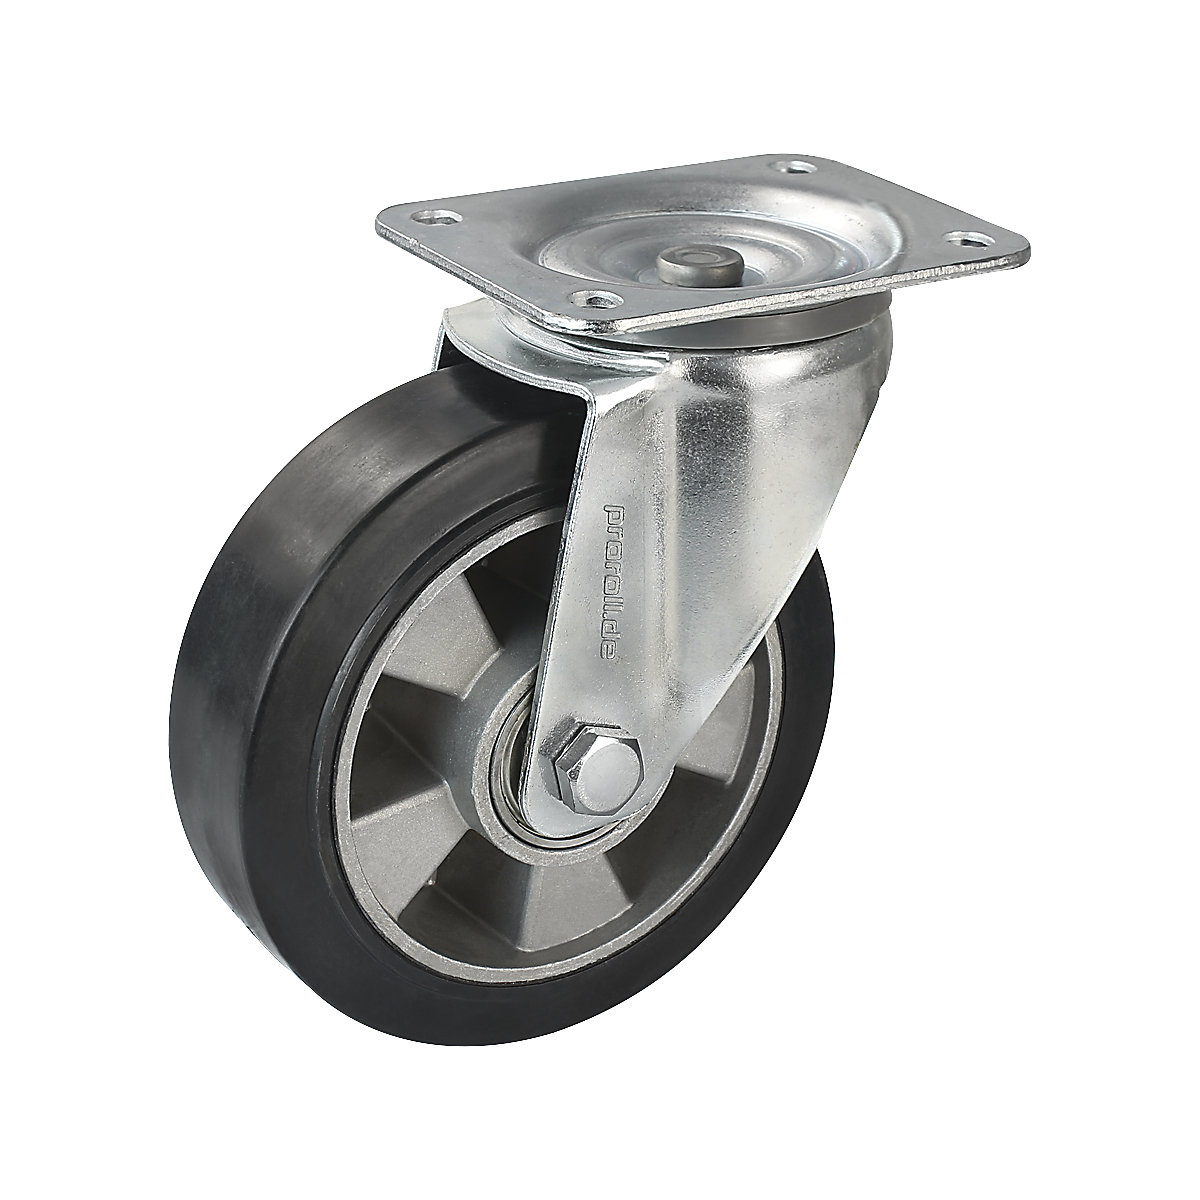 Elastični kotač od pune gume, u crnoj boji – Proroll, Ø x širina kotača 200 x 50 mm, okretni kotač-5